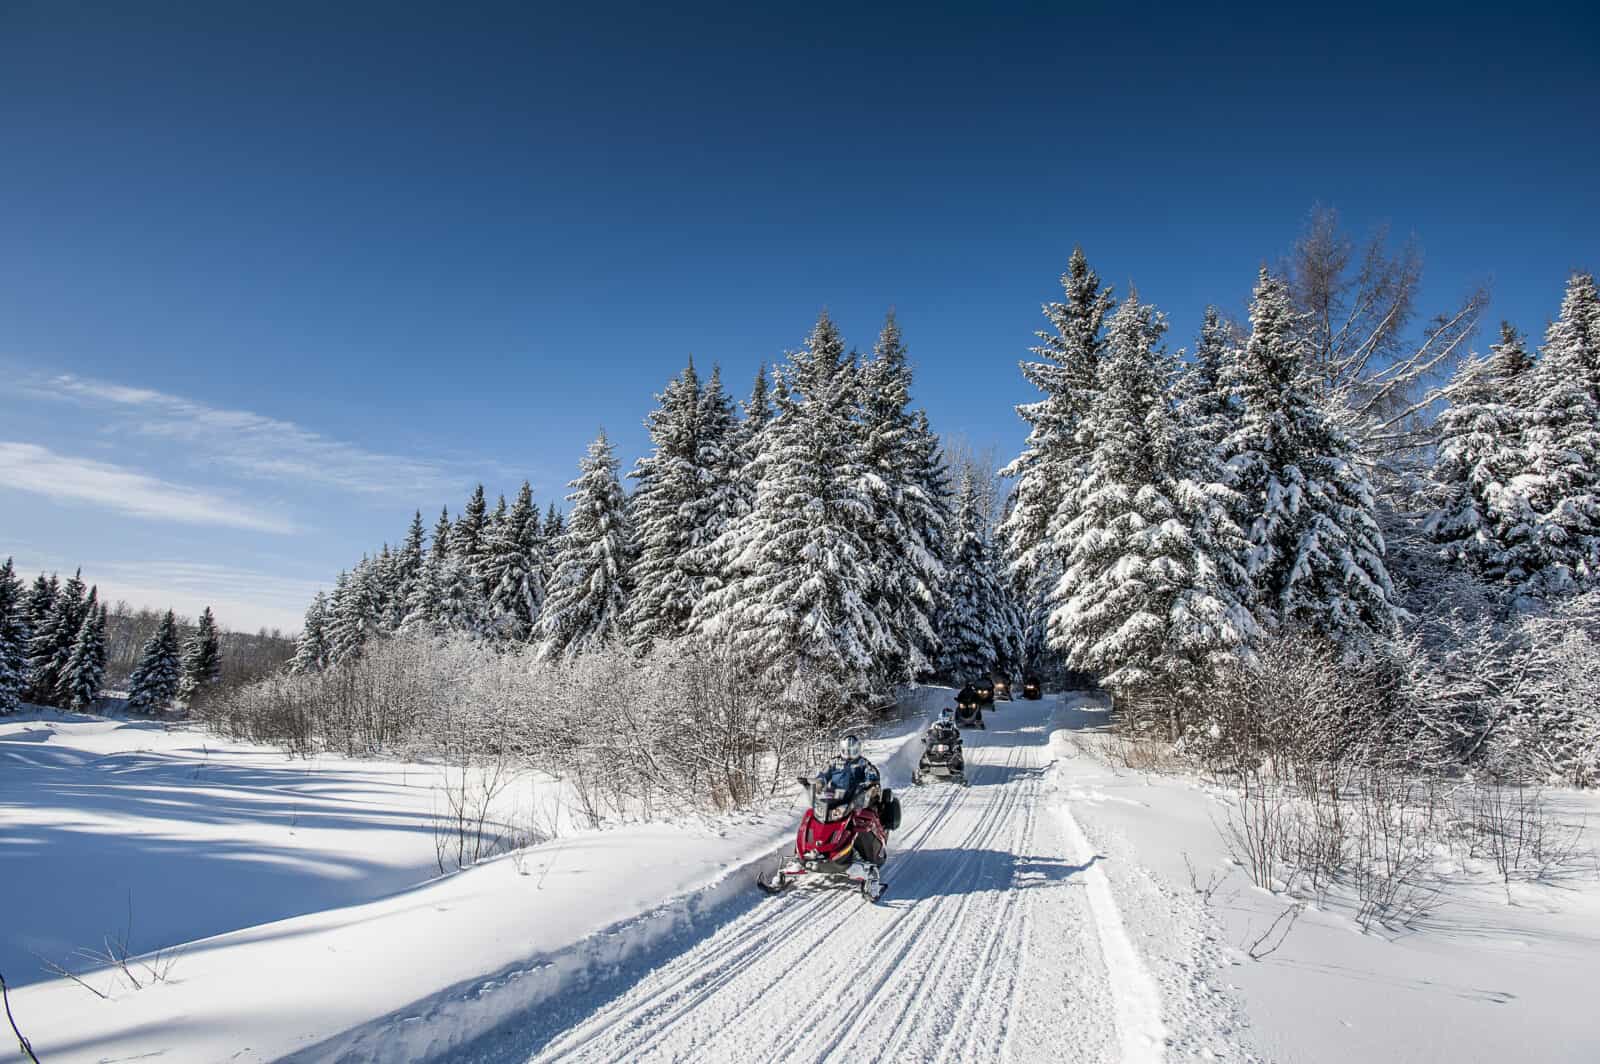 Winter in Kanada - Mit dem Snowmobil unterwegs